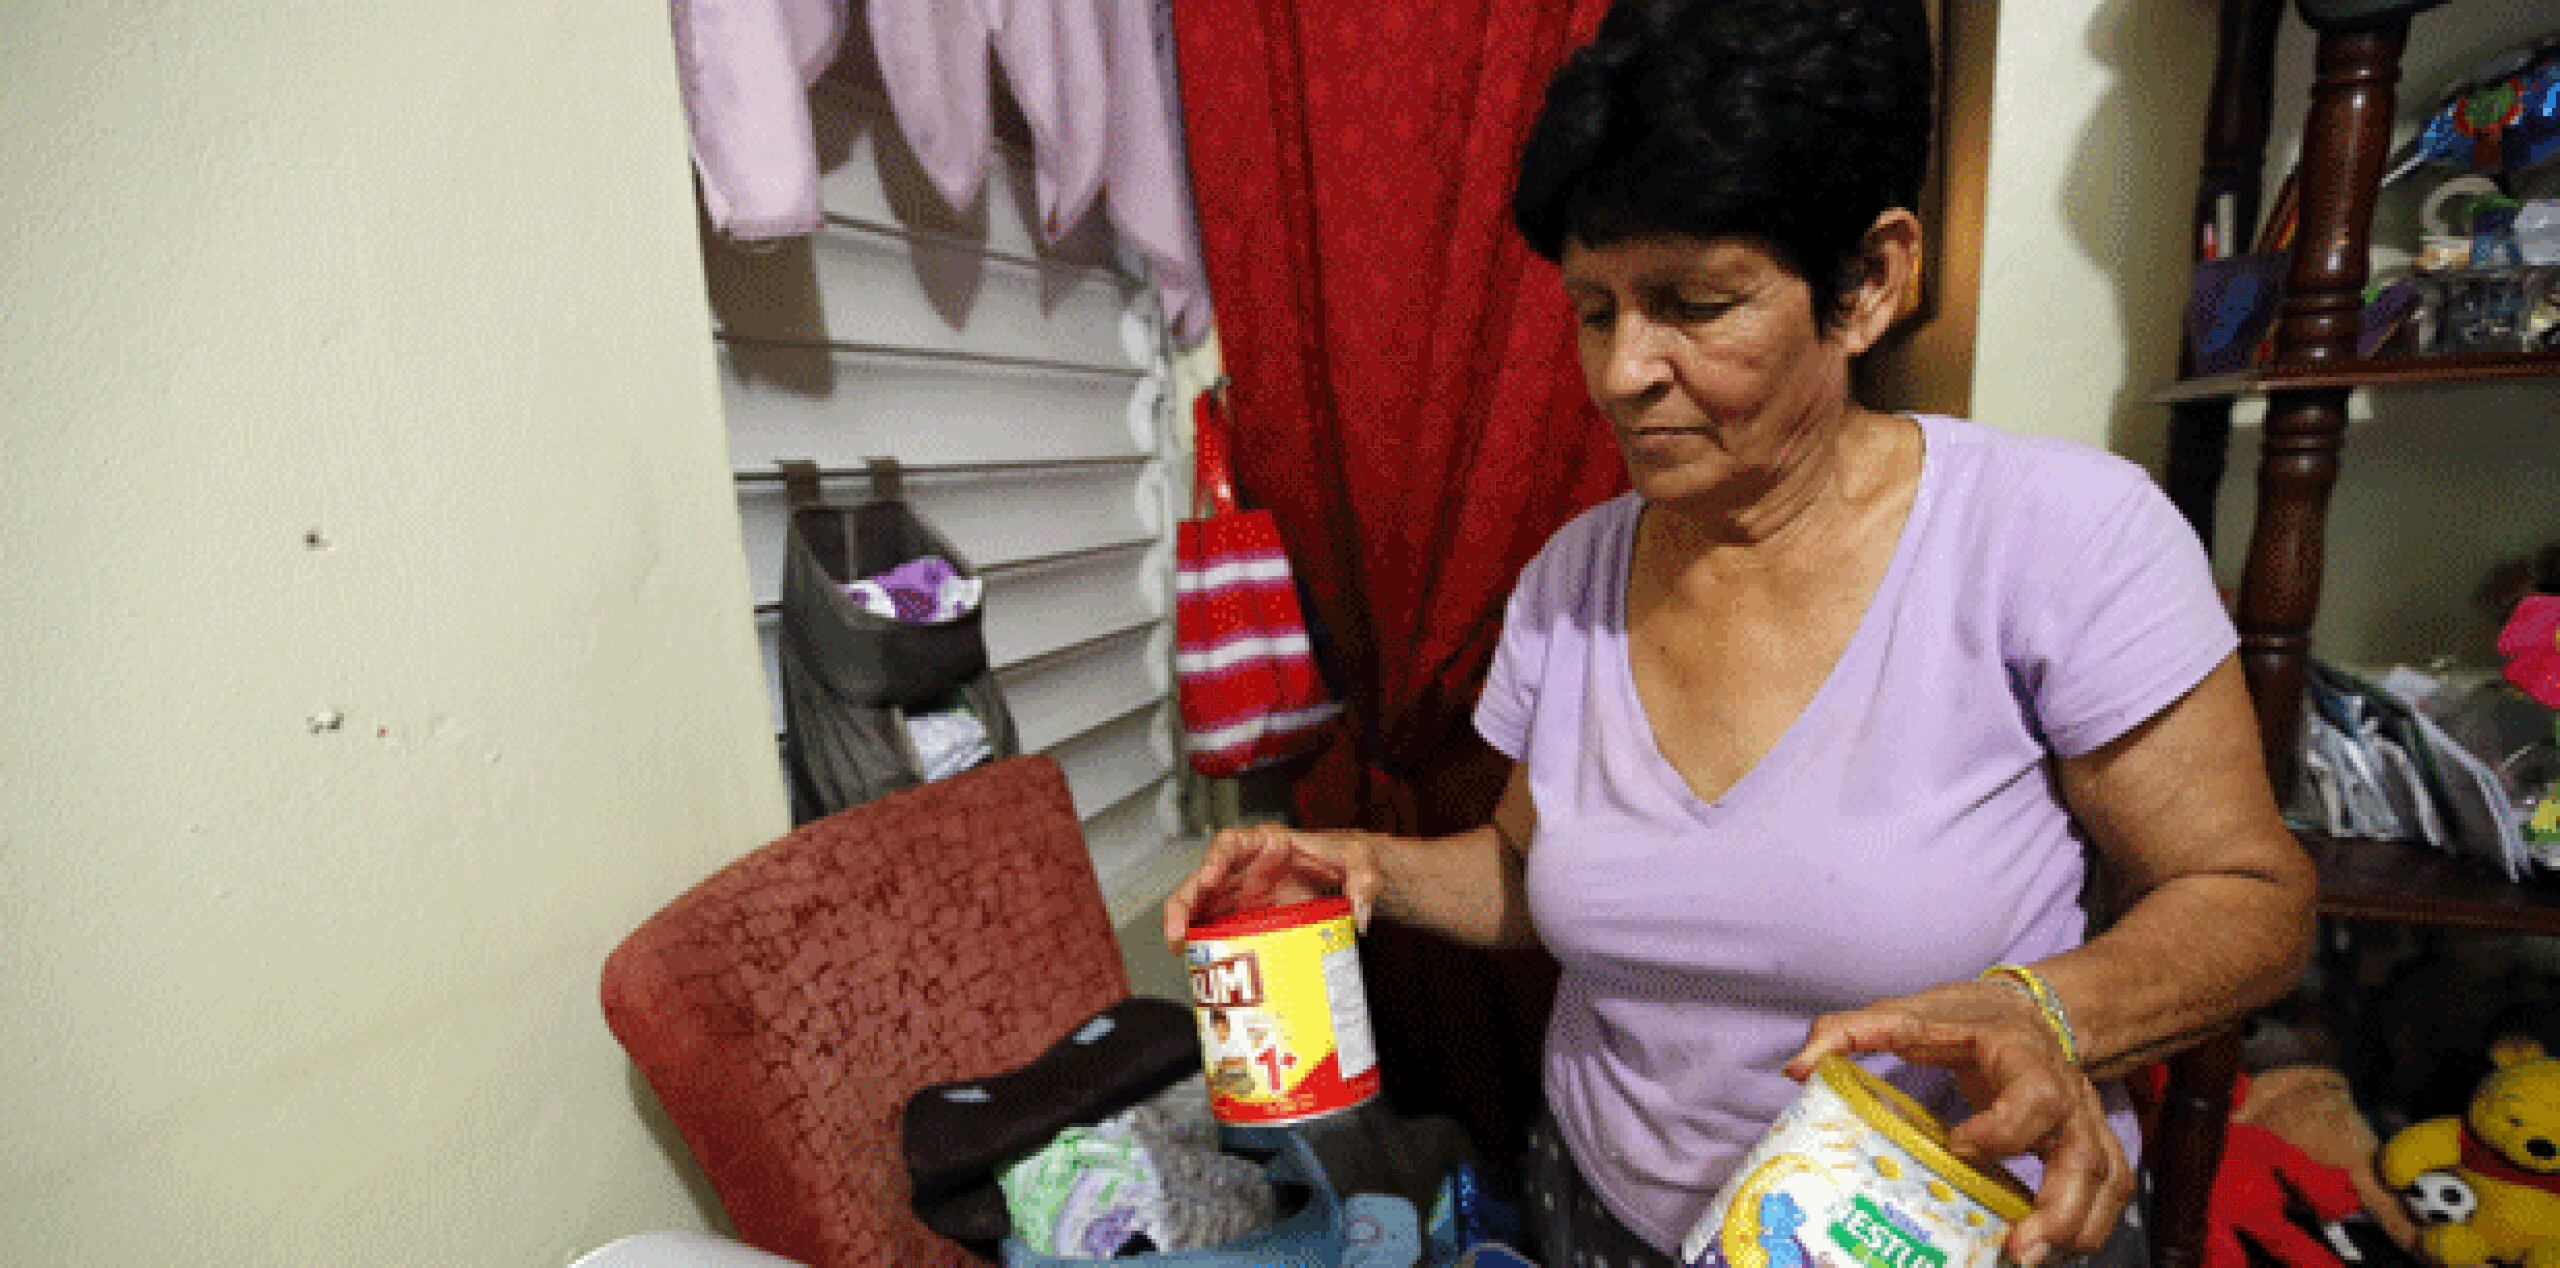 Varias familias, entre ellas la de Carmen Pagán Matos, recogieron parte de sus pertenencias, entre ellos leche y juguetes para infantes, para pasar la noche en la casa de unos amigos. (juan.martinez@gfrmedia.com)